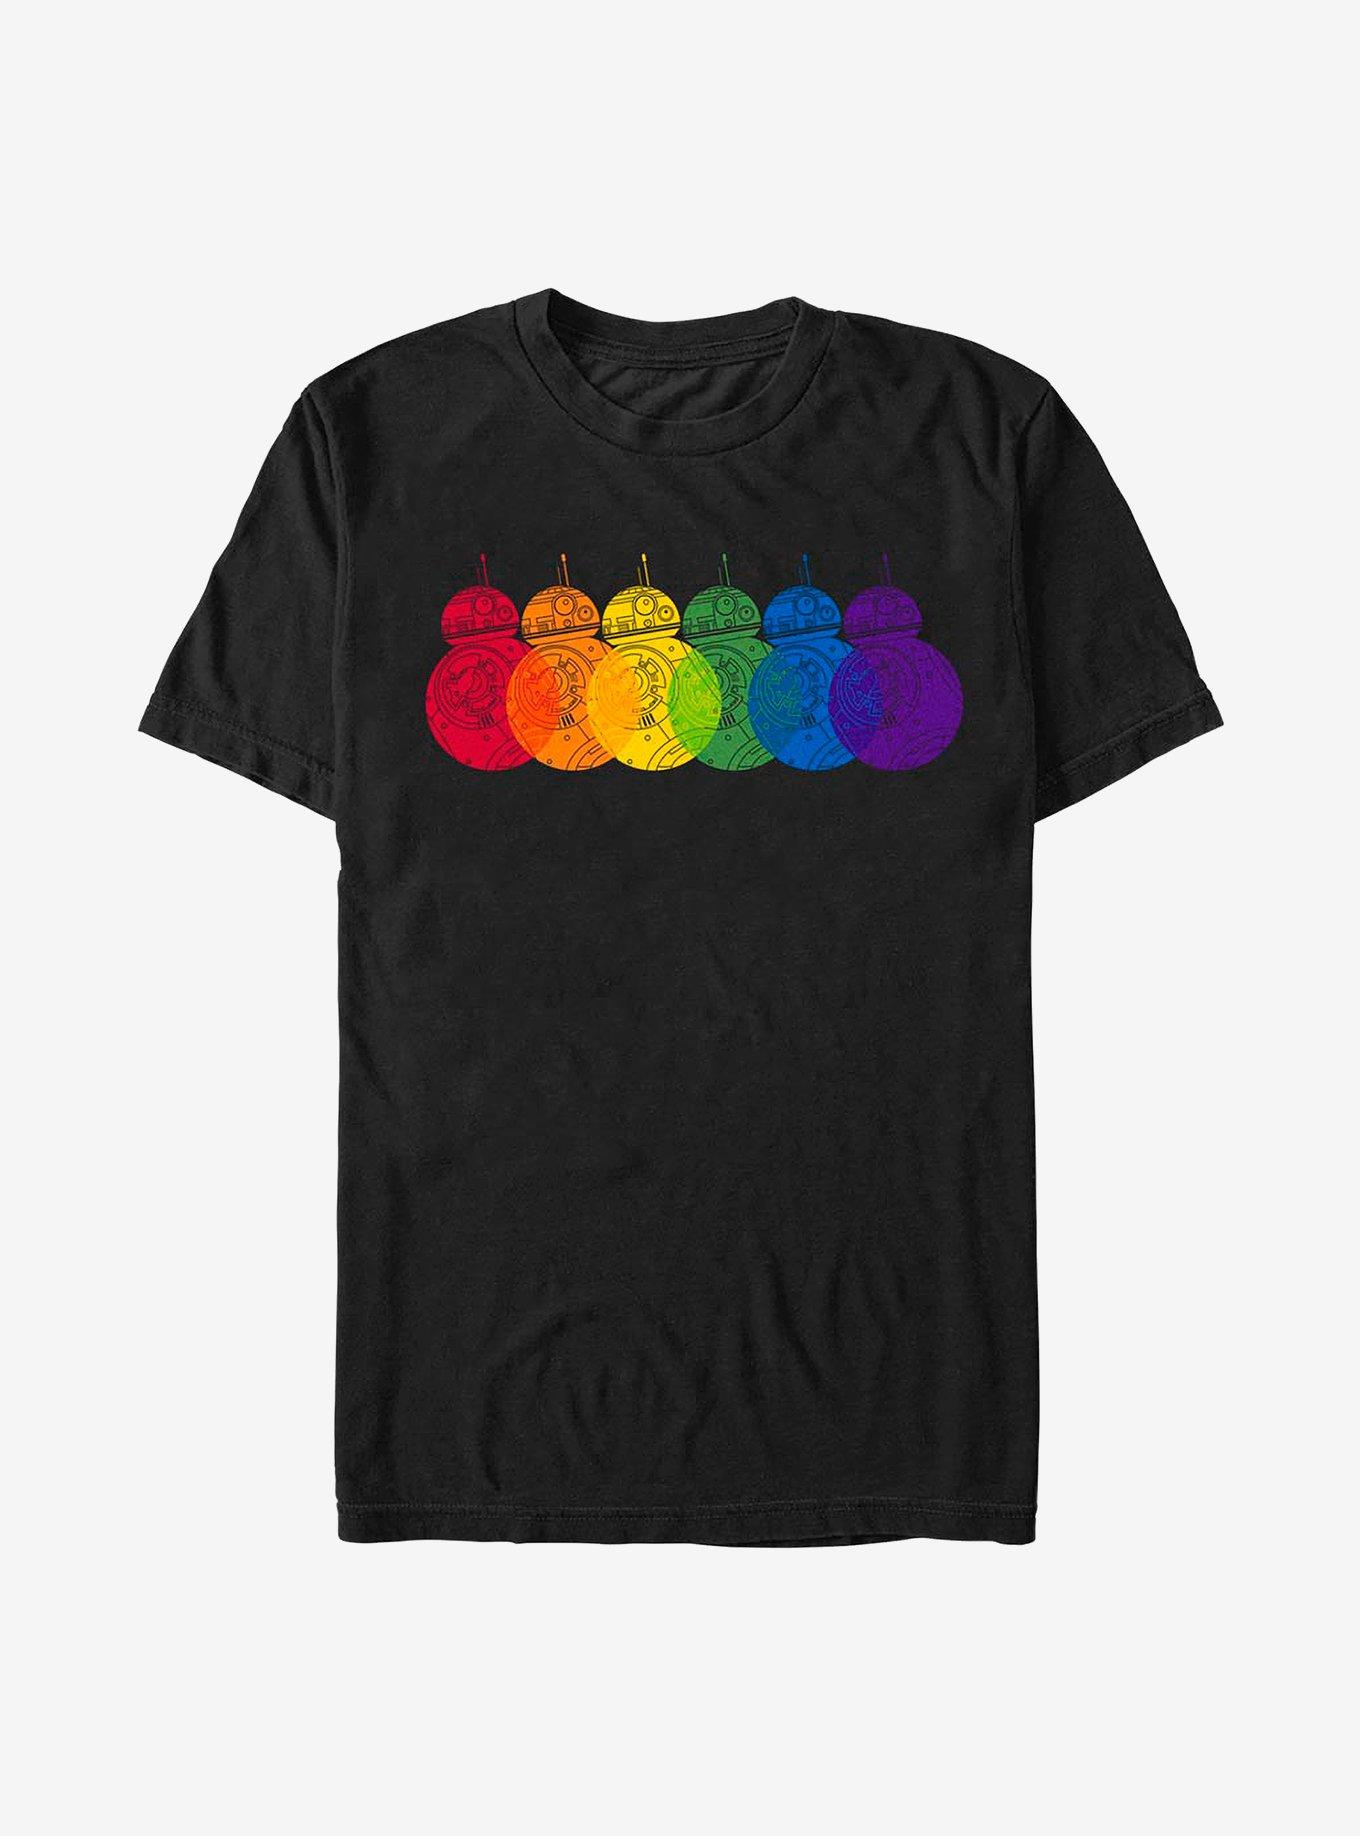 Star Wars: The Last Jedi BB-8 Rainbows Logo T-Shirt, , hi-res